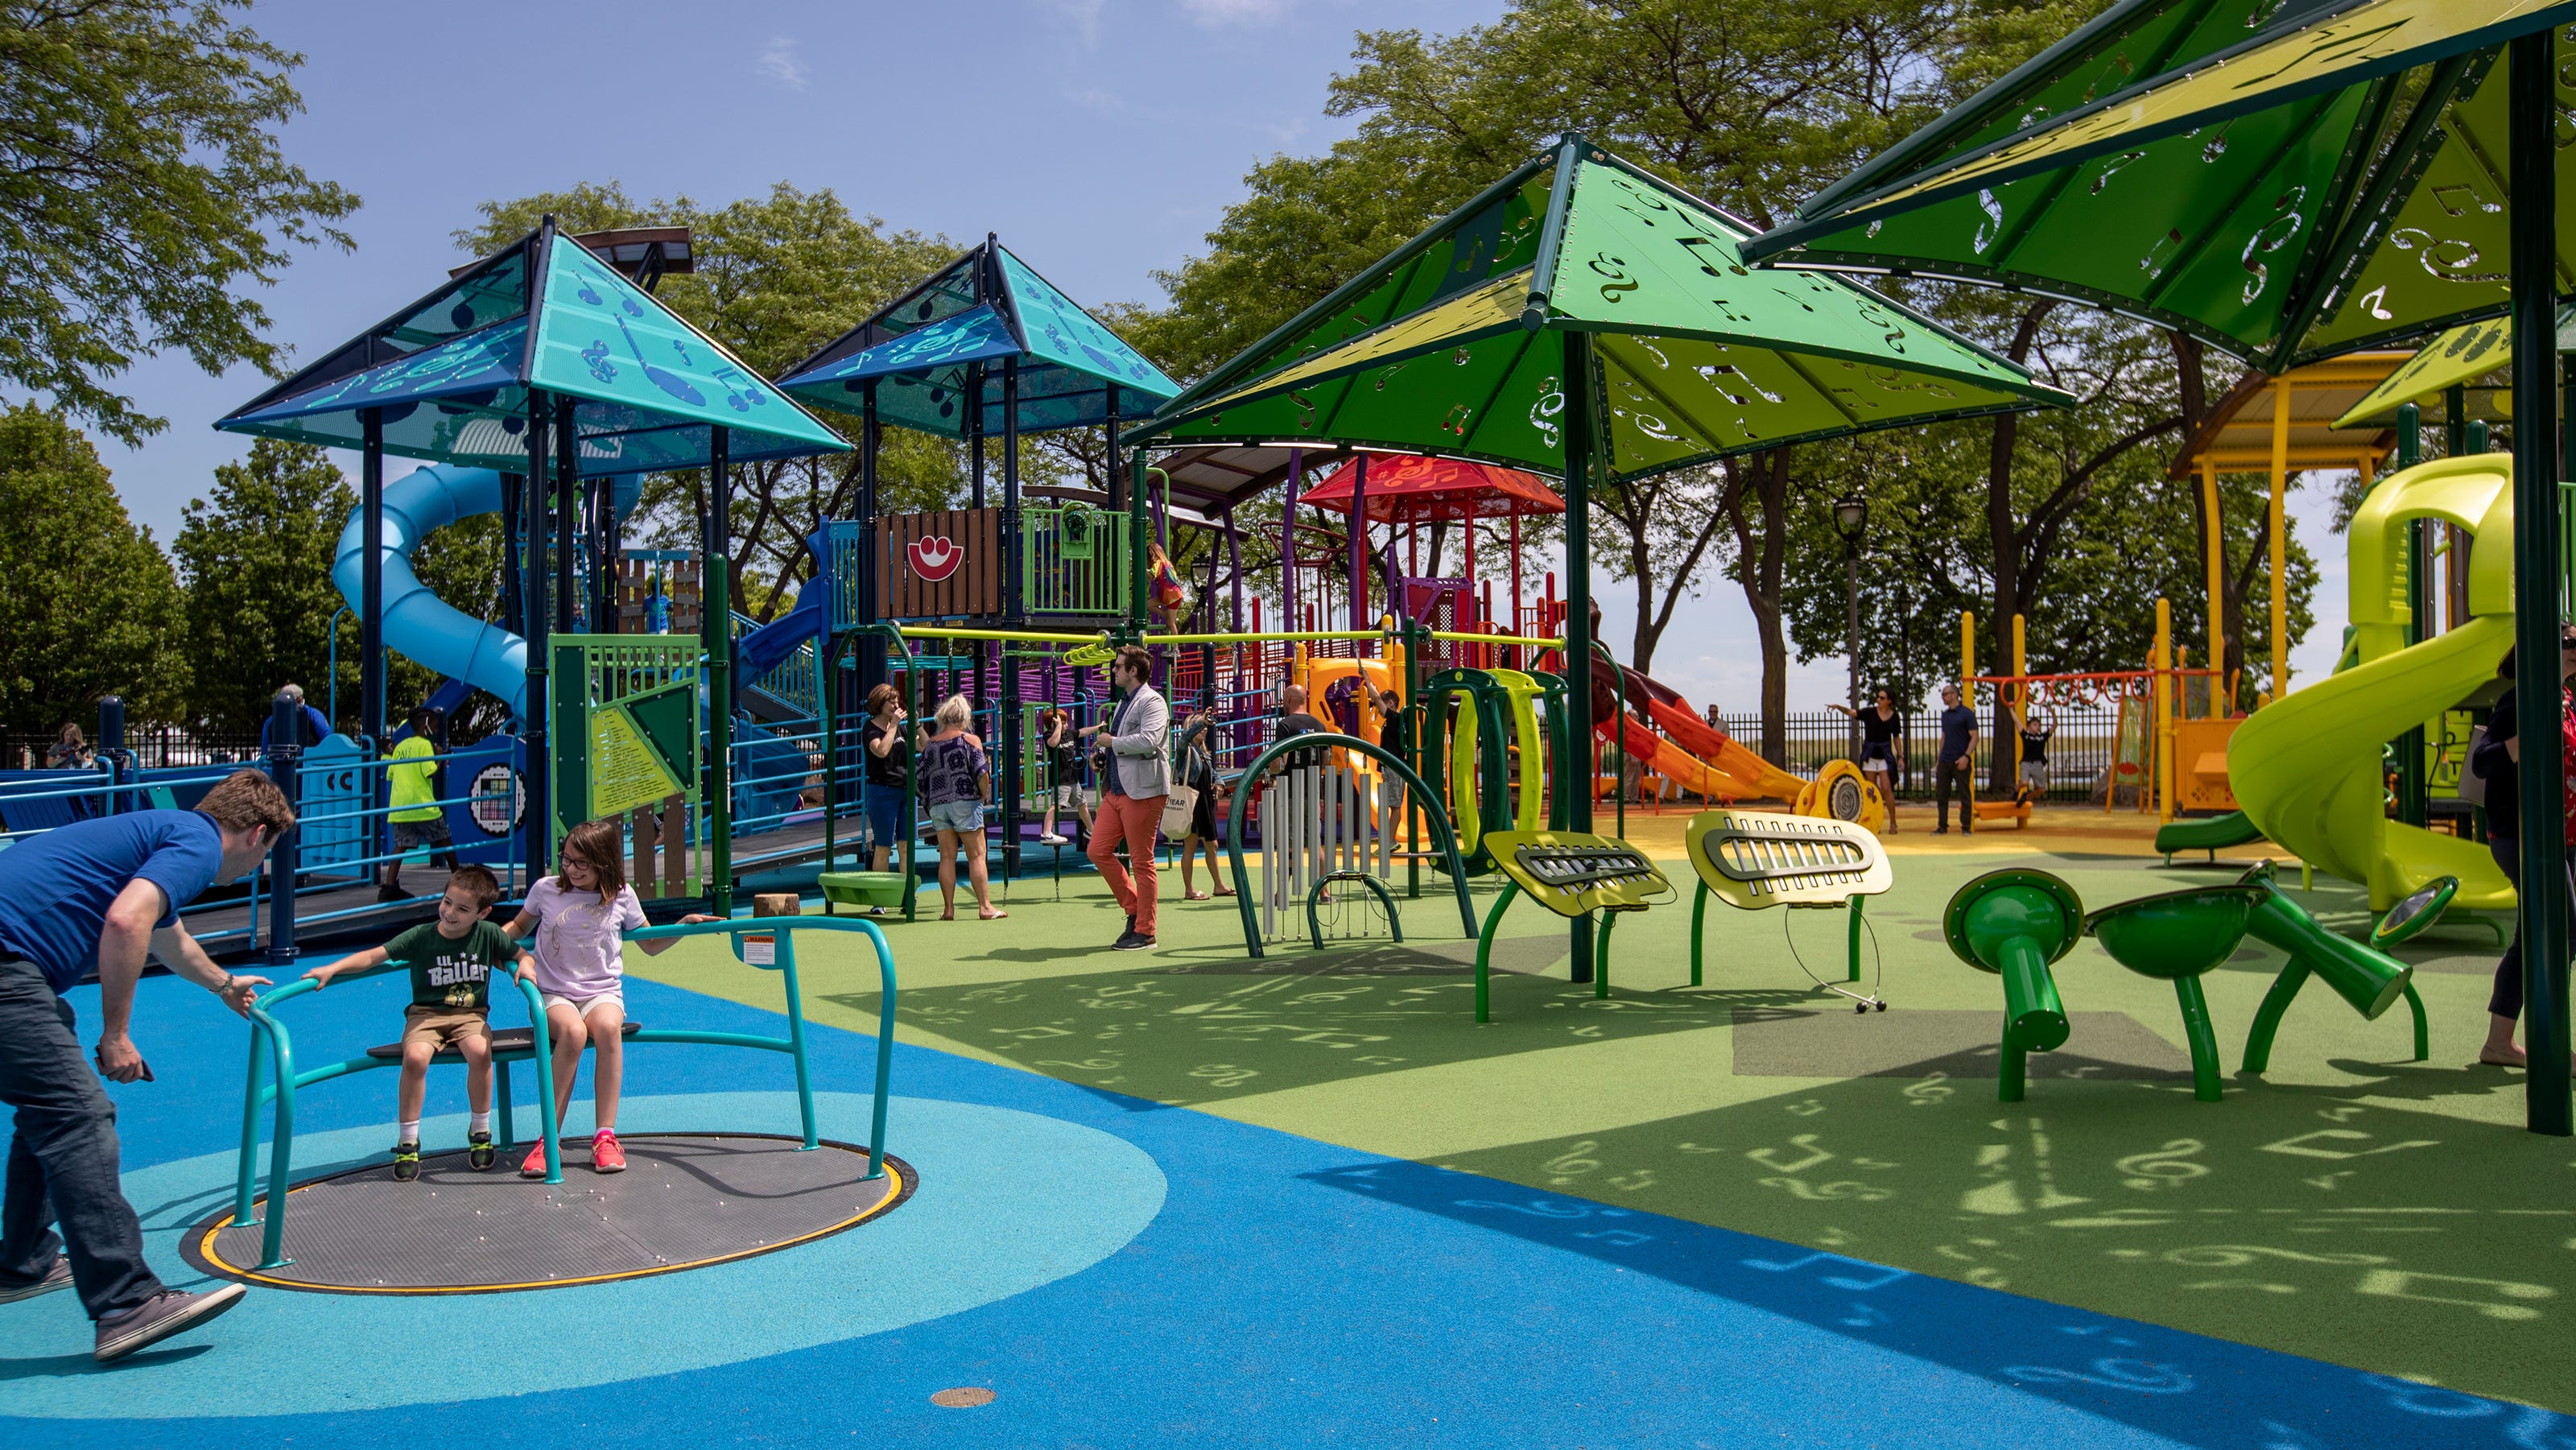 Playground to reopen on Milwaukee's Summerfest grounds